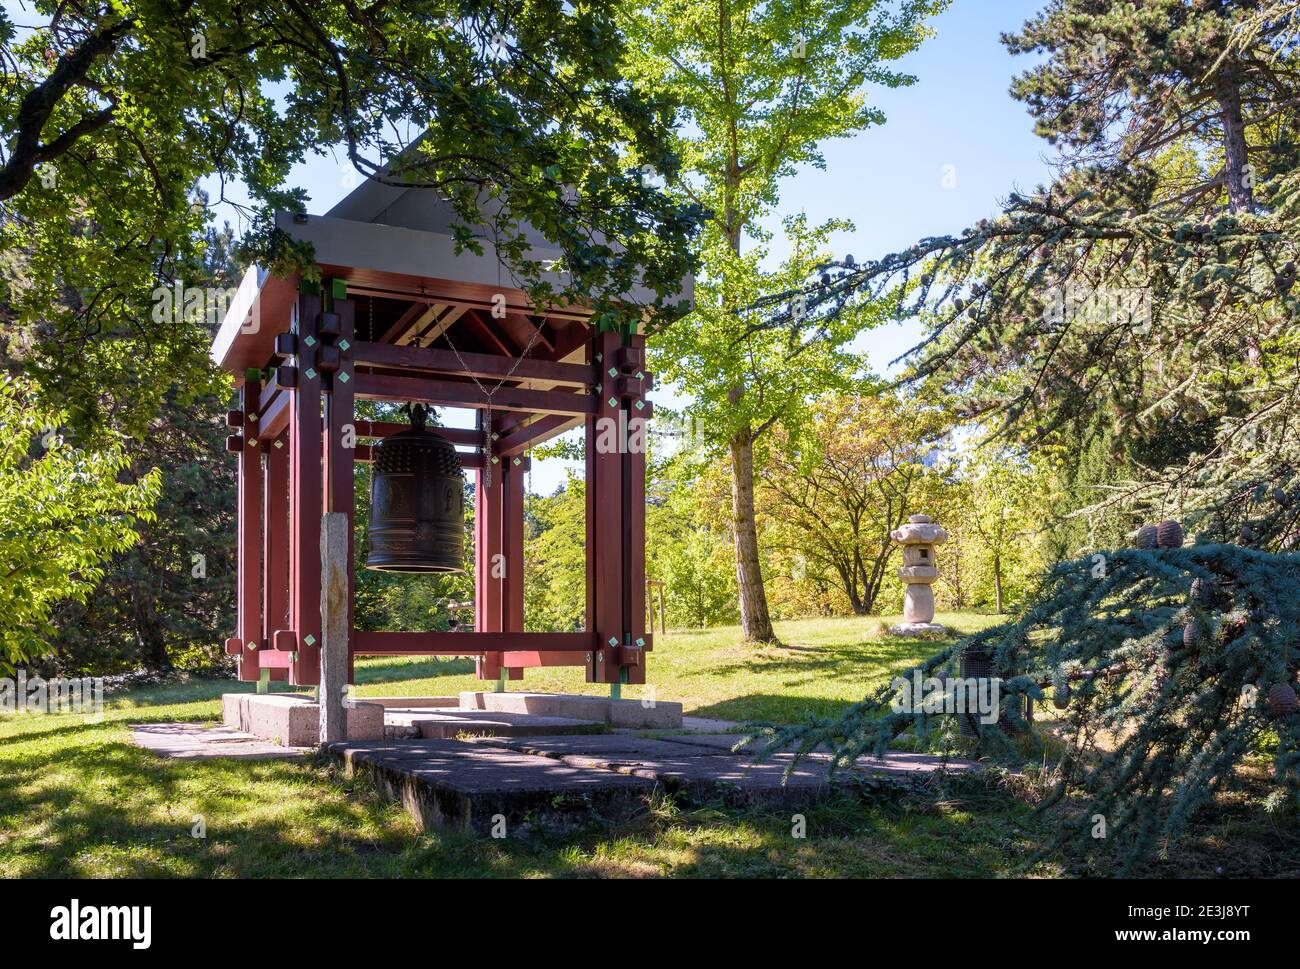 Vista generale della replica della campana Shinagawa installata nel parco Ariana di Ginevra. Foto Stock